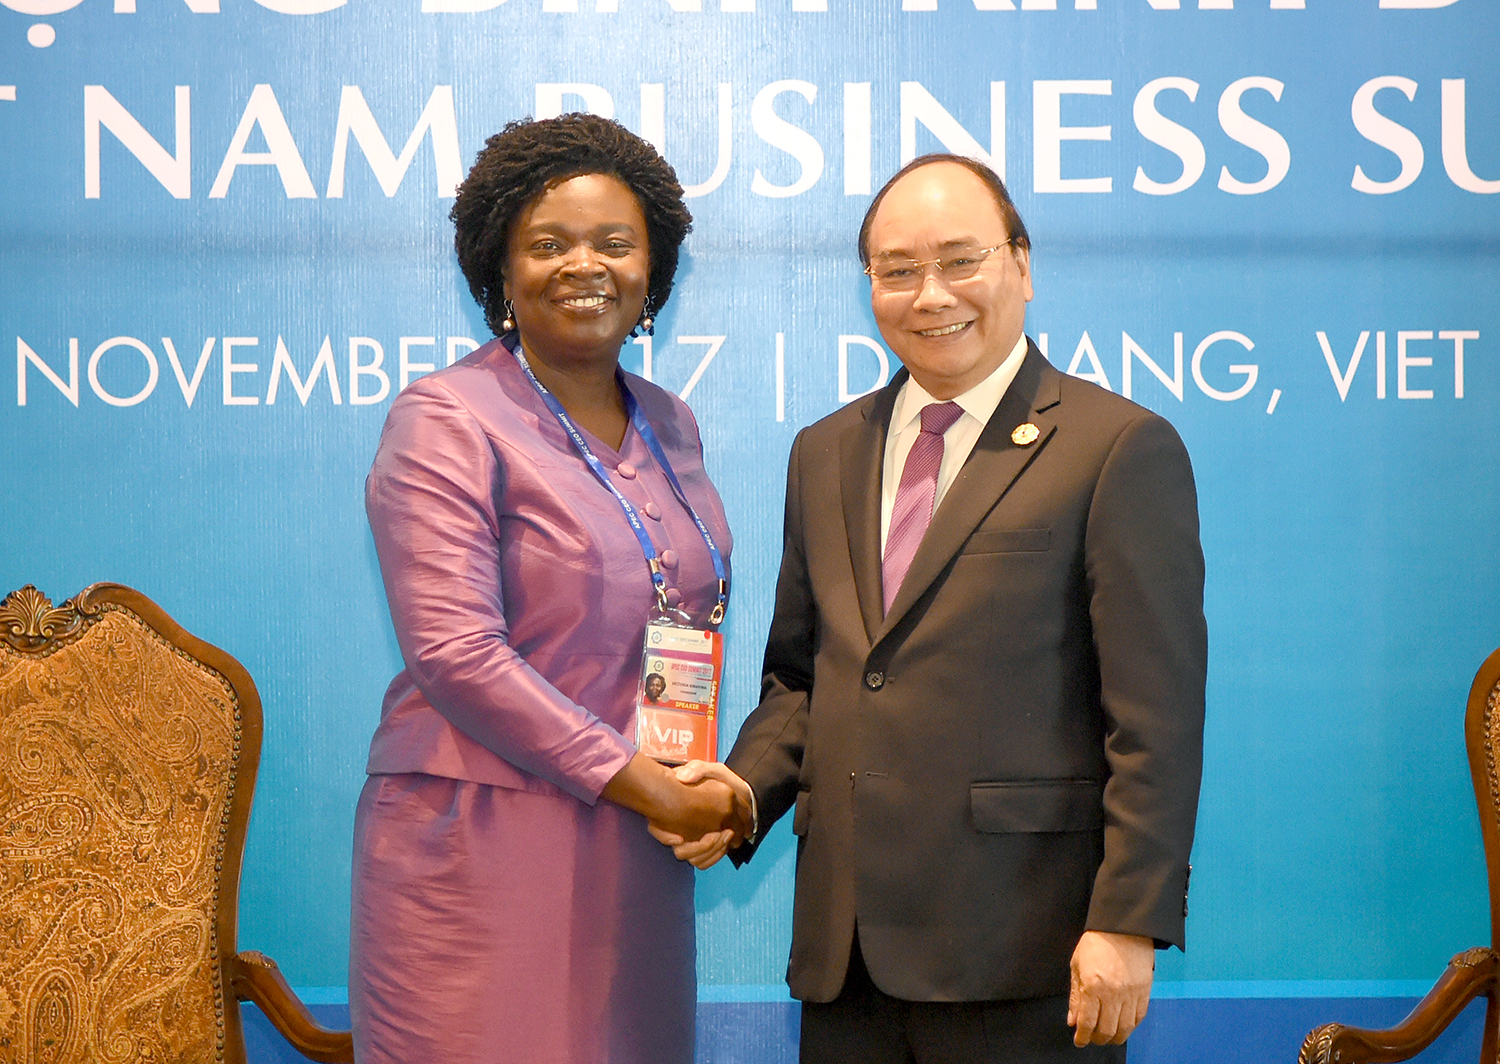 Thủ tướng tiếp bà Victoria Kwakwa, Phó Chủ tịch Ngân hàng Thế giới (WB) khu vực Đông Á và Thái Bình Dương